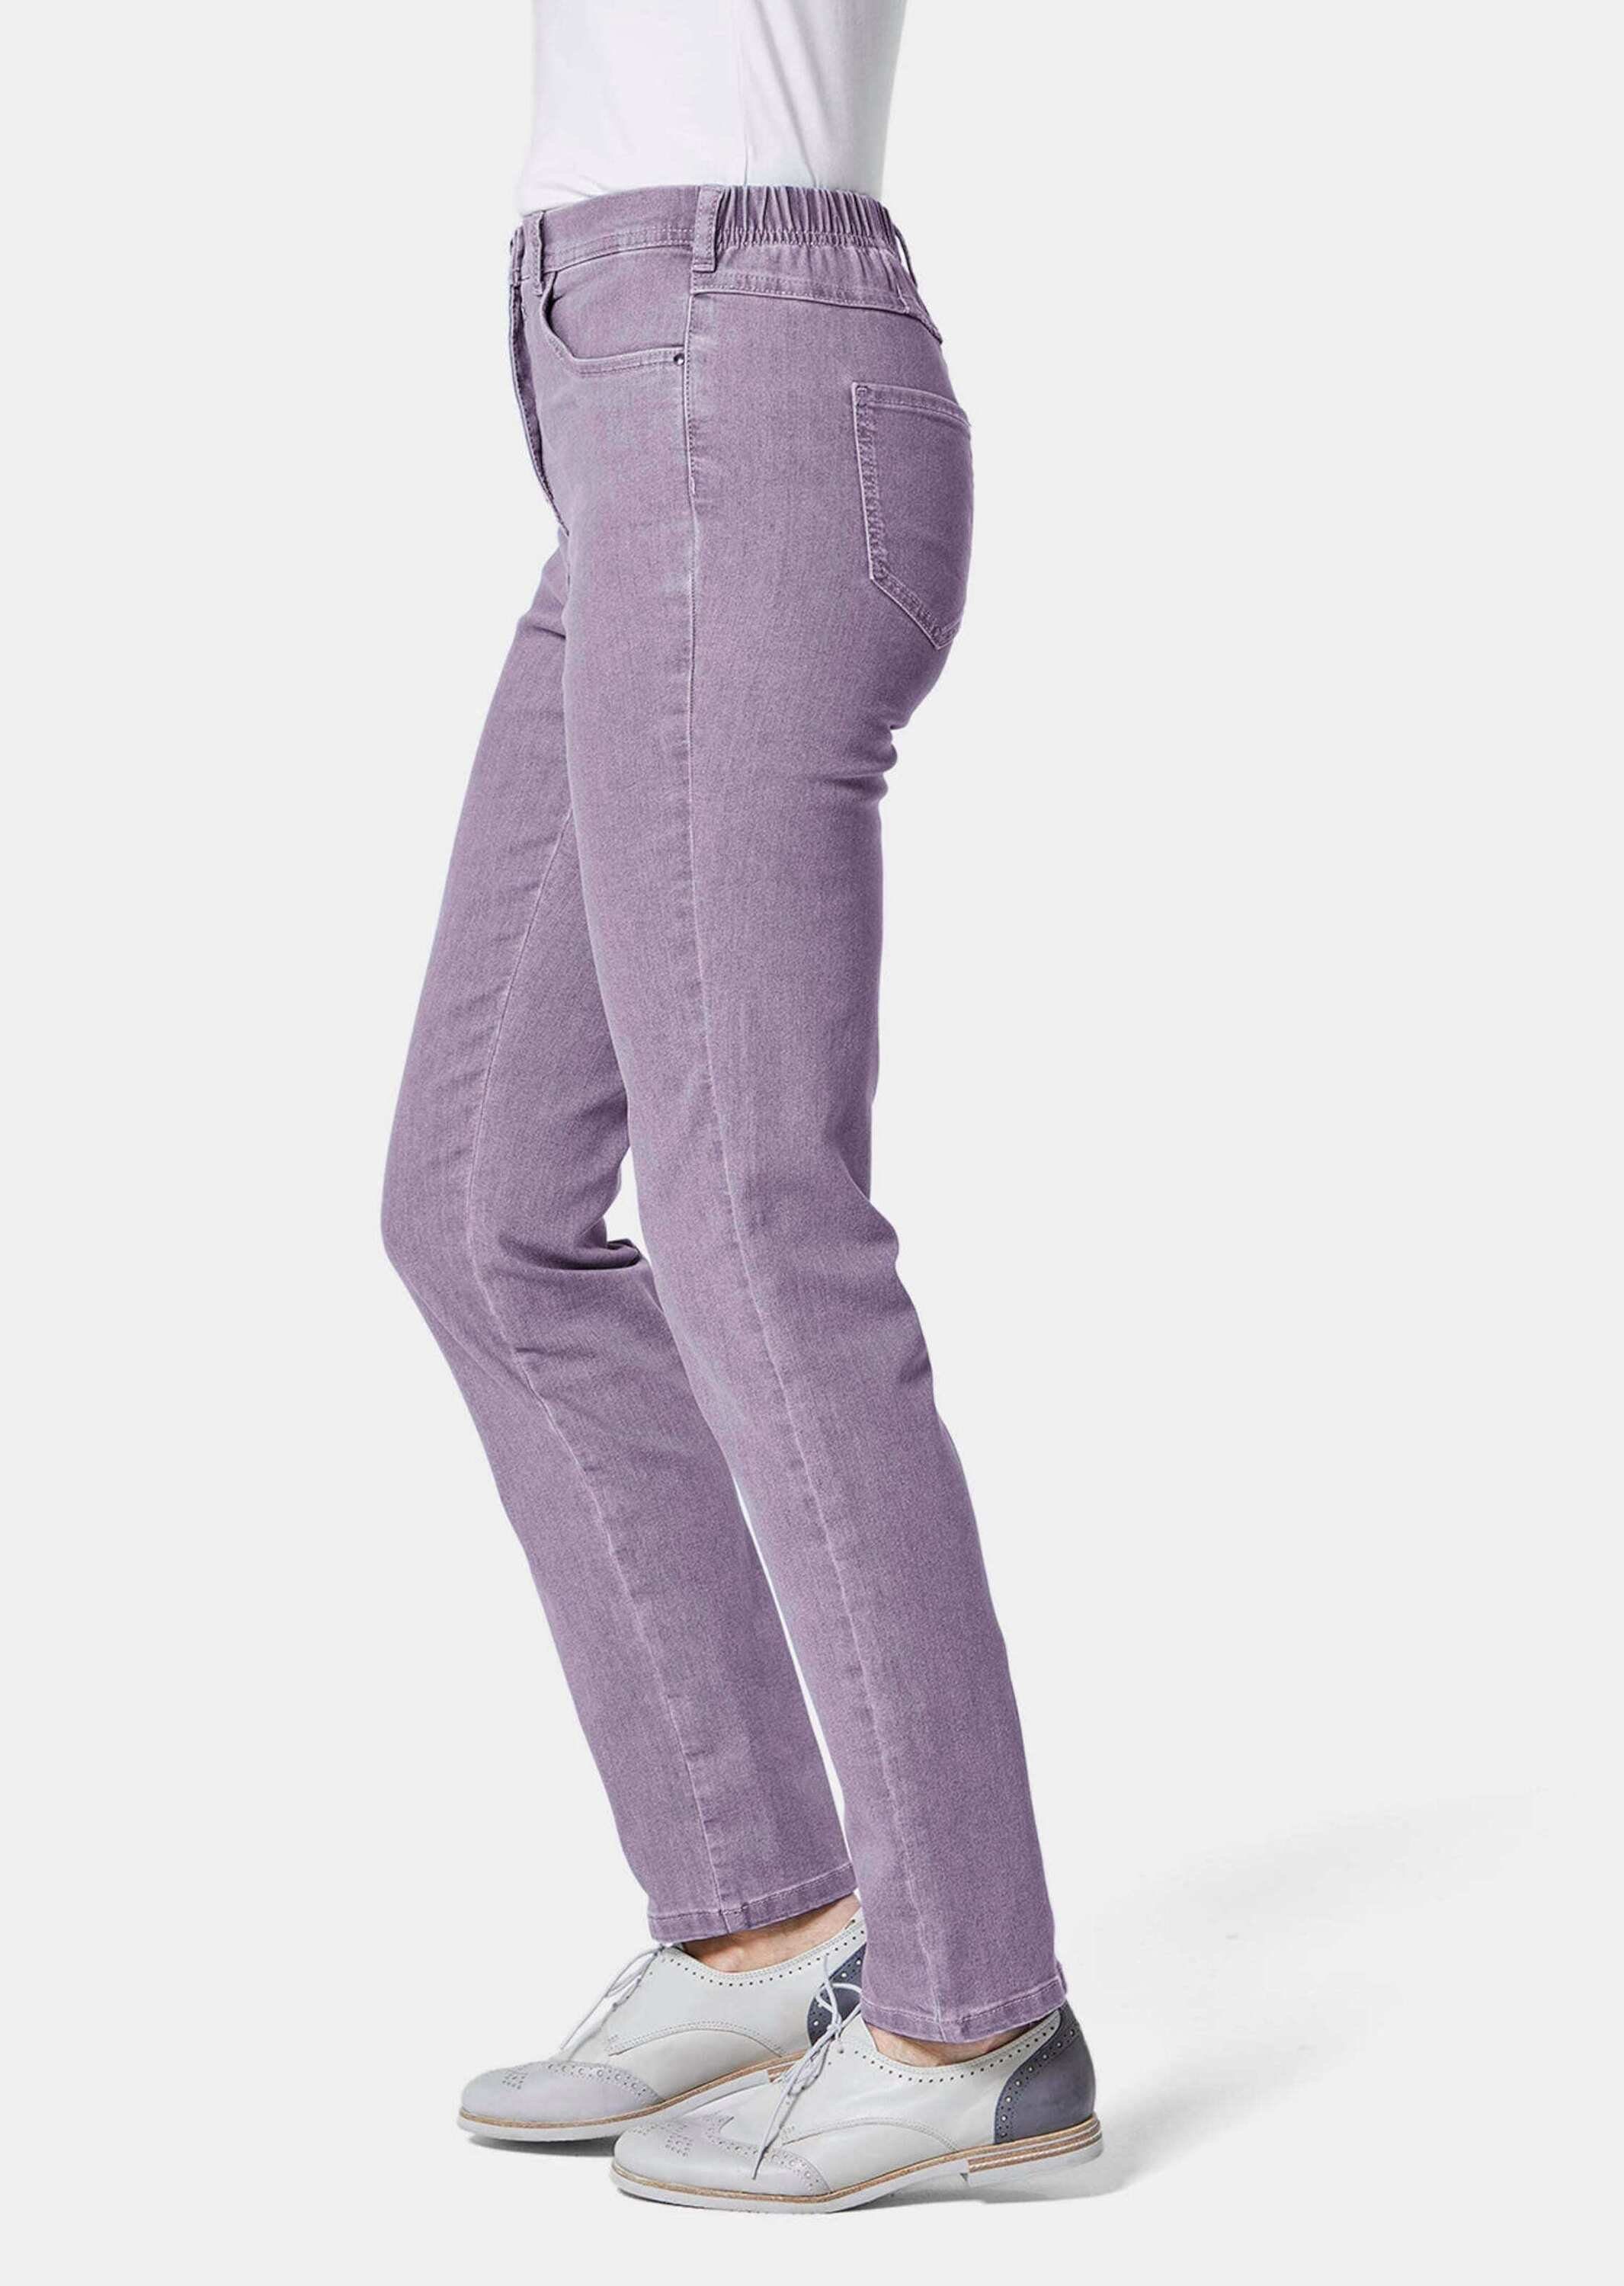 GOLDNER Bequeme Jeans Kurzgröße: lavendel High-Stretch-Jeanshose Bequeme